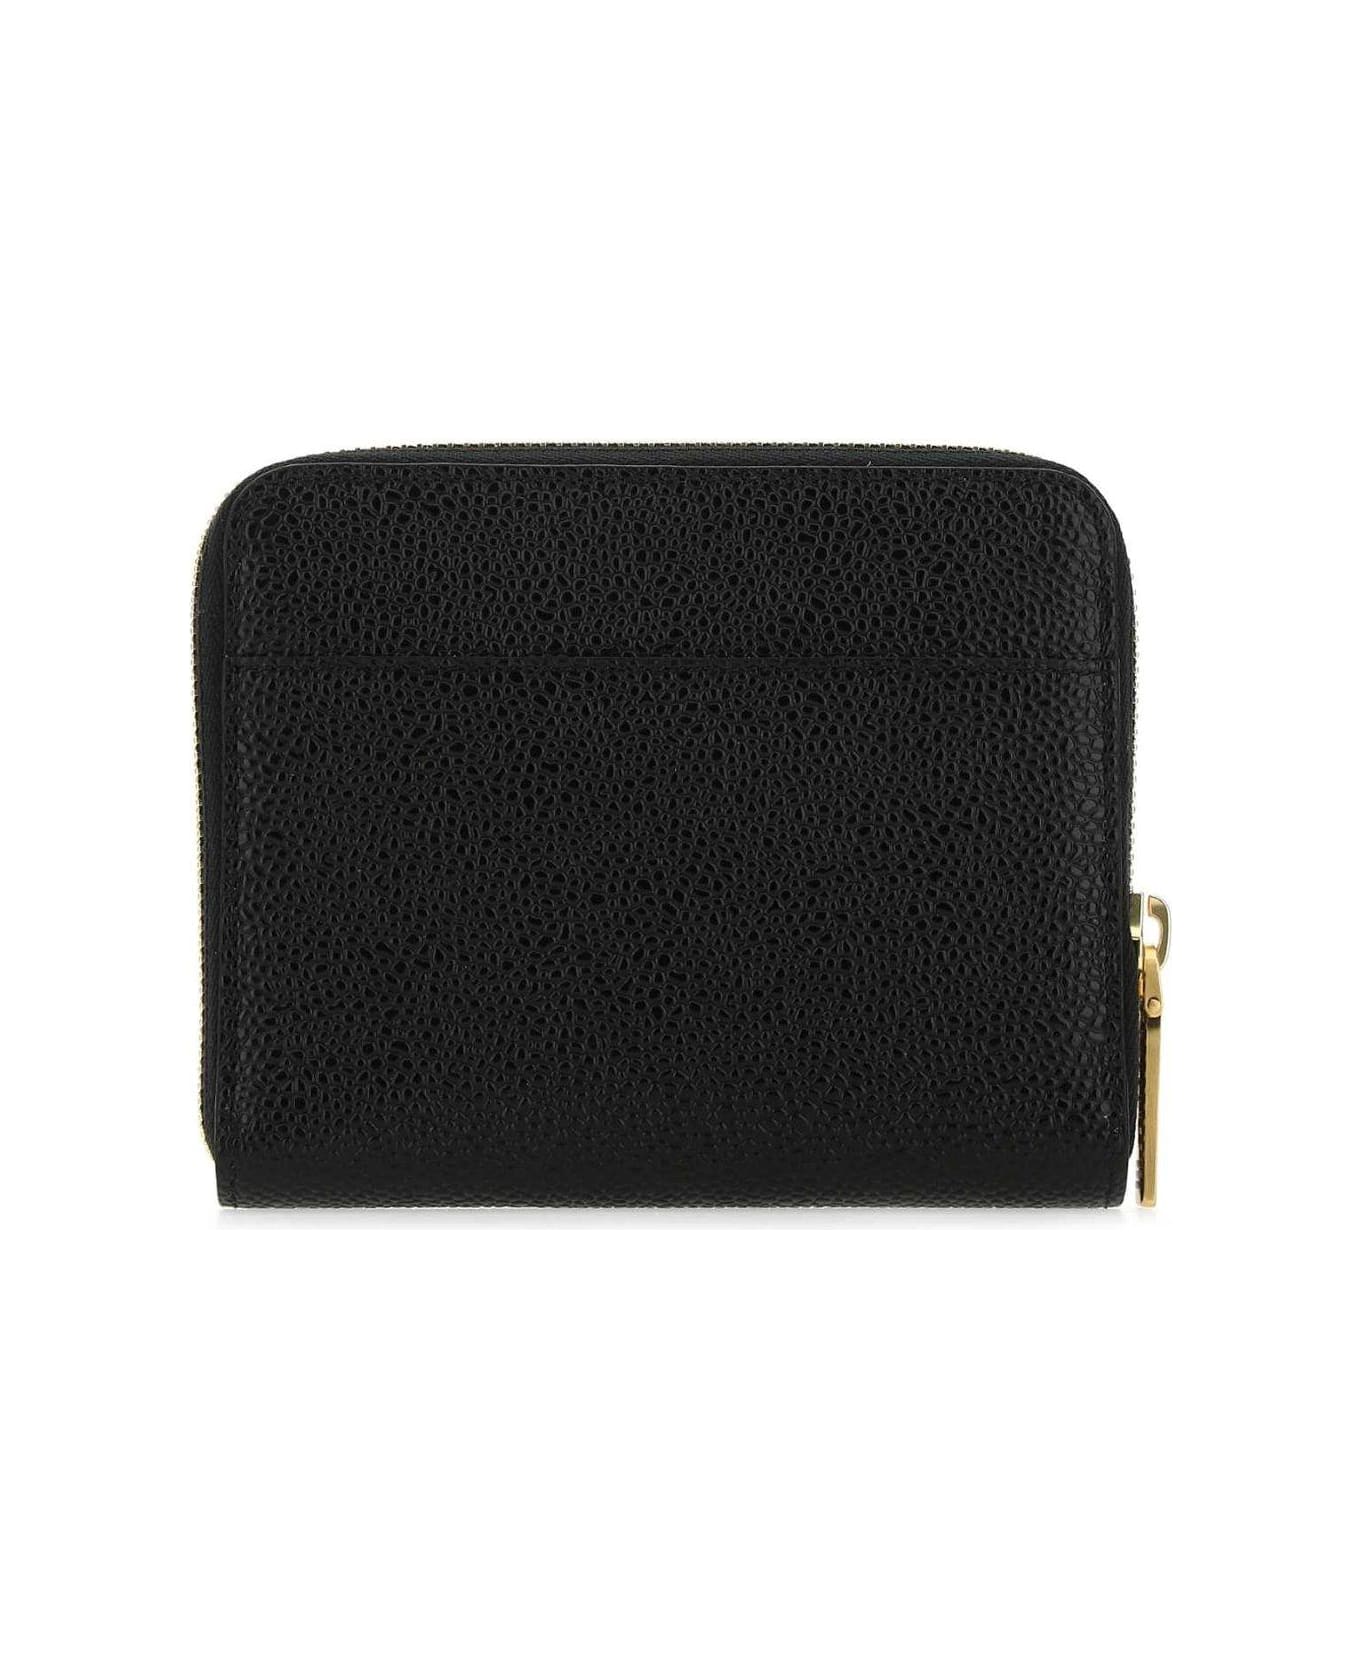 Thom Browne Logo Embossed Zipped Wallet - BLACK 財布